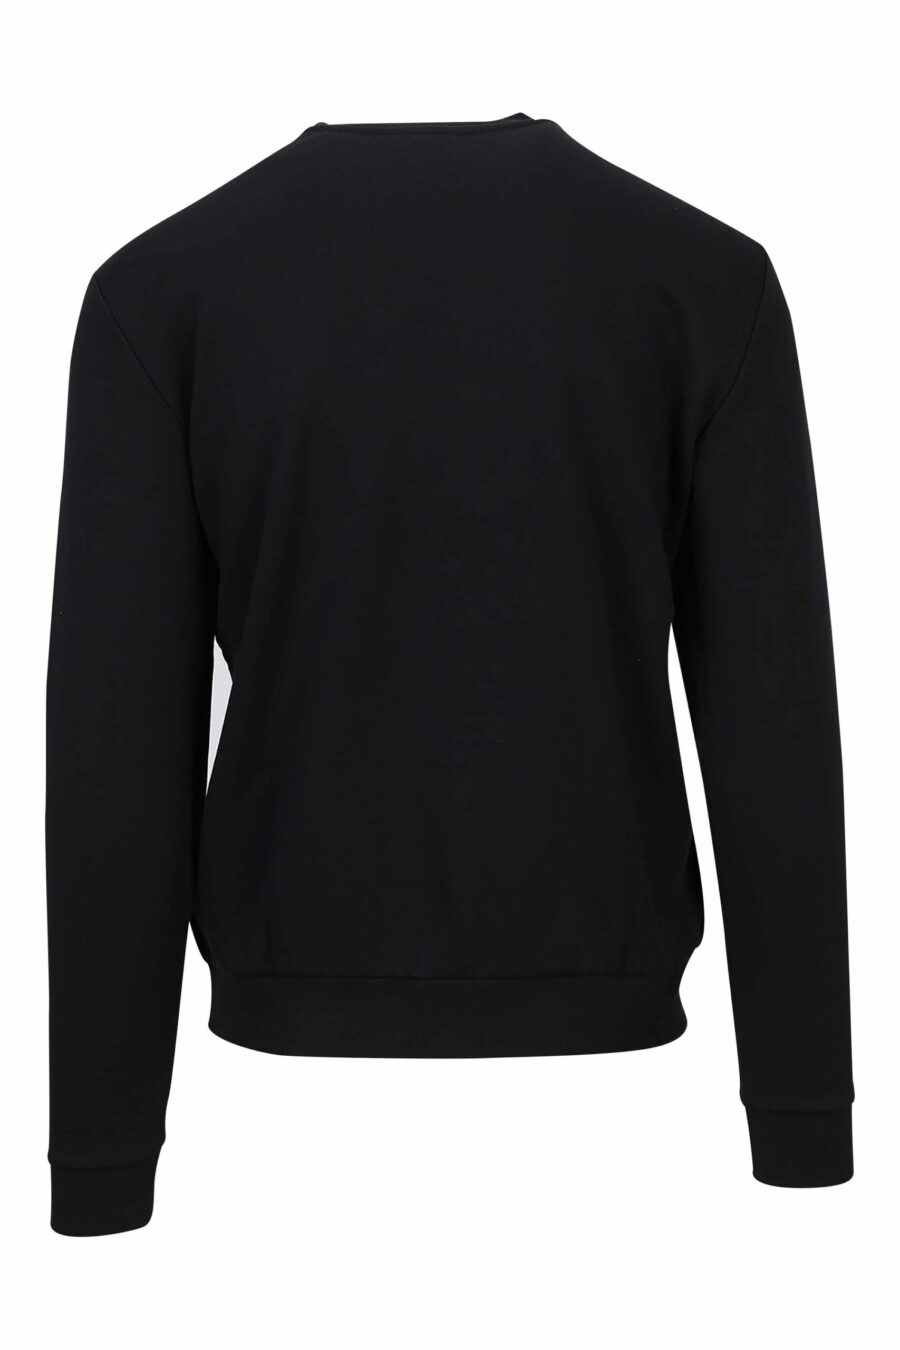 Schwarzes Sweatshirt mit Maxilogo-Mix "lux identity" - 8057767624064 1 skaliert